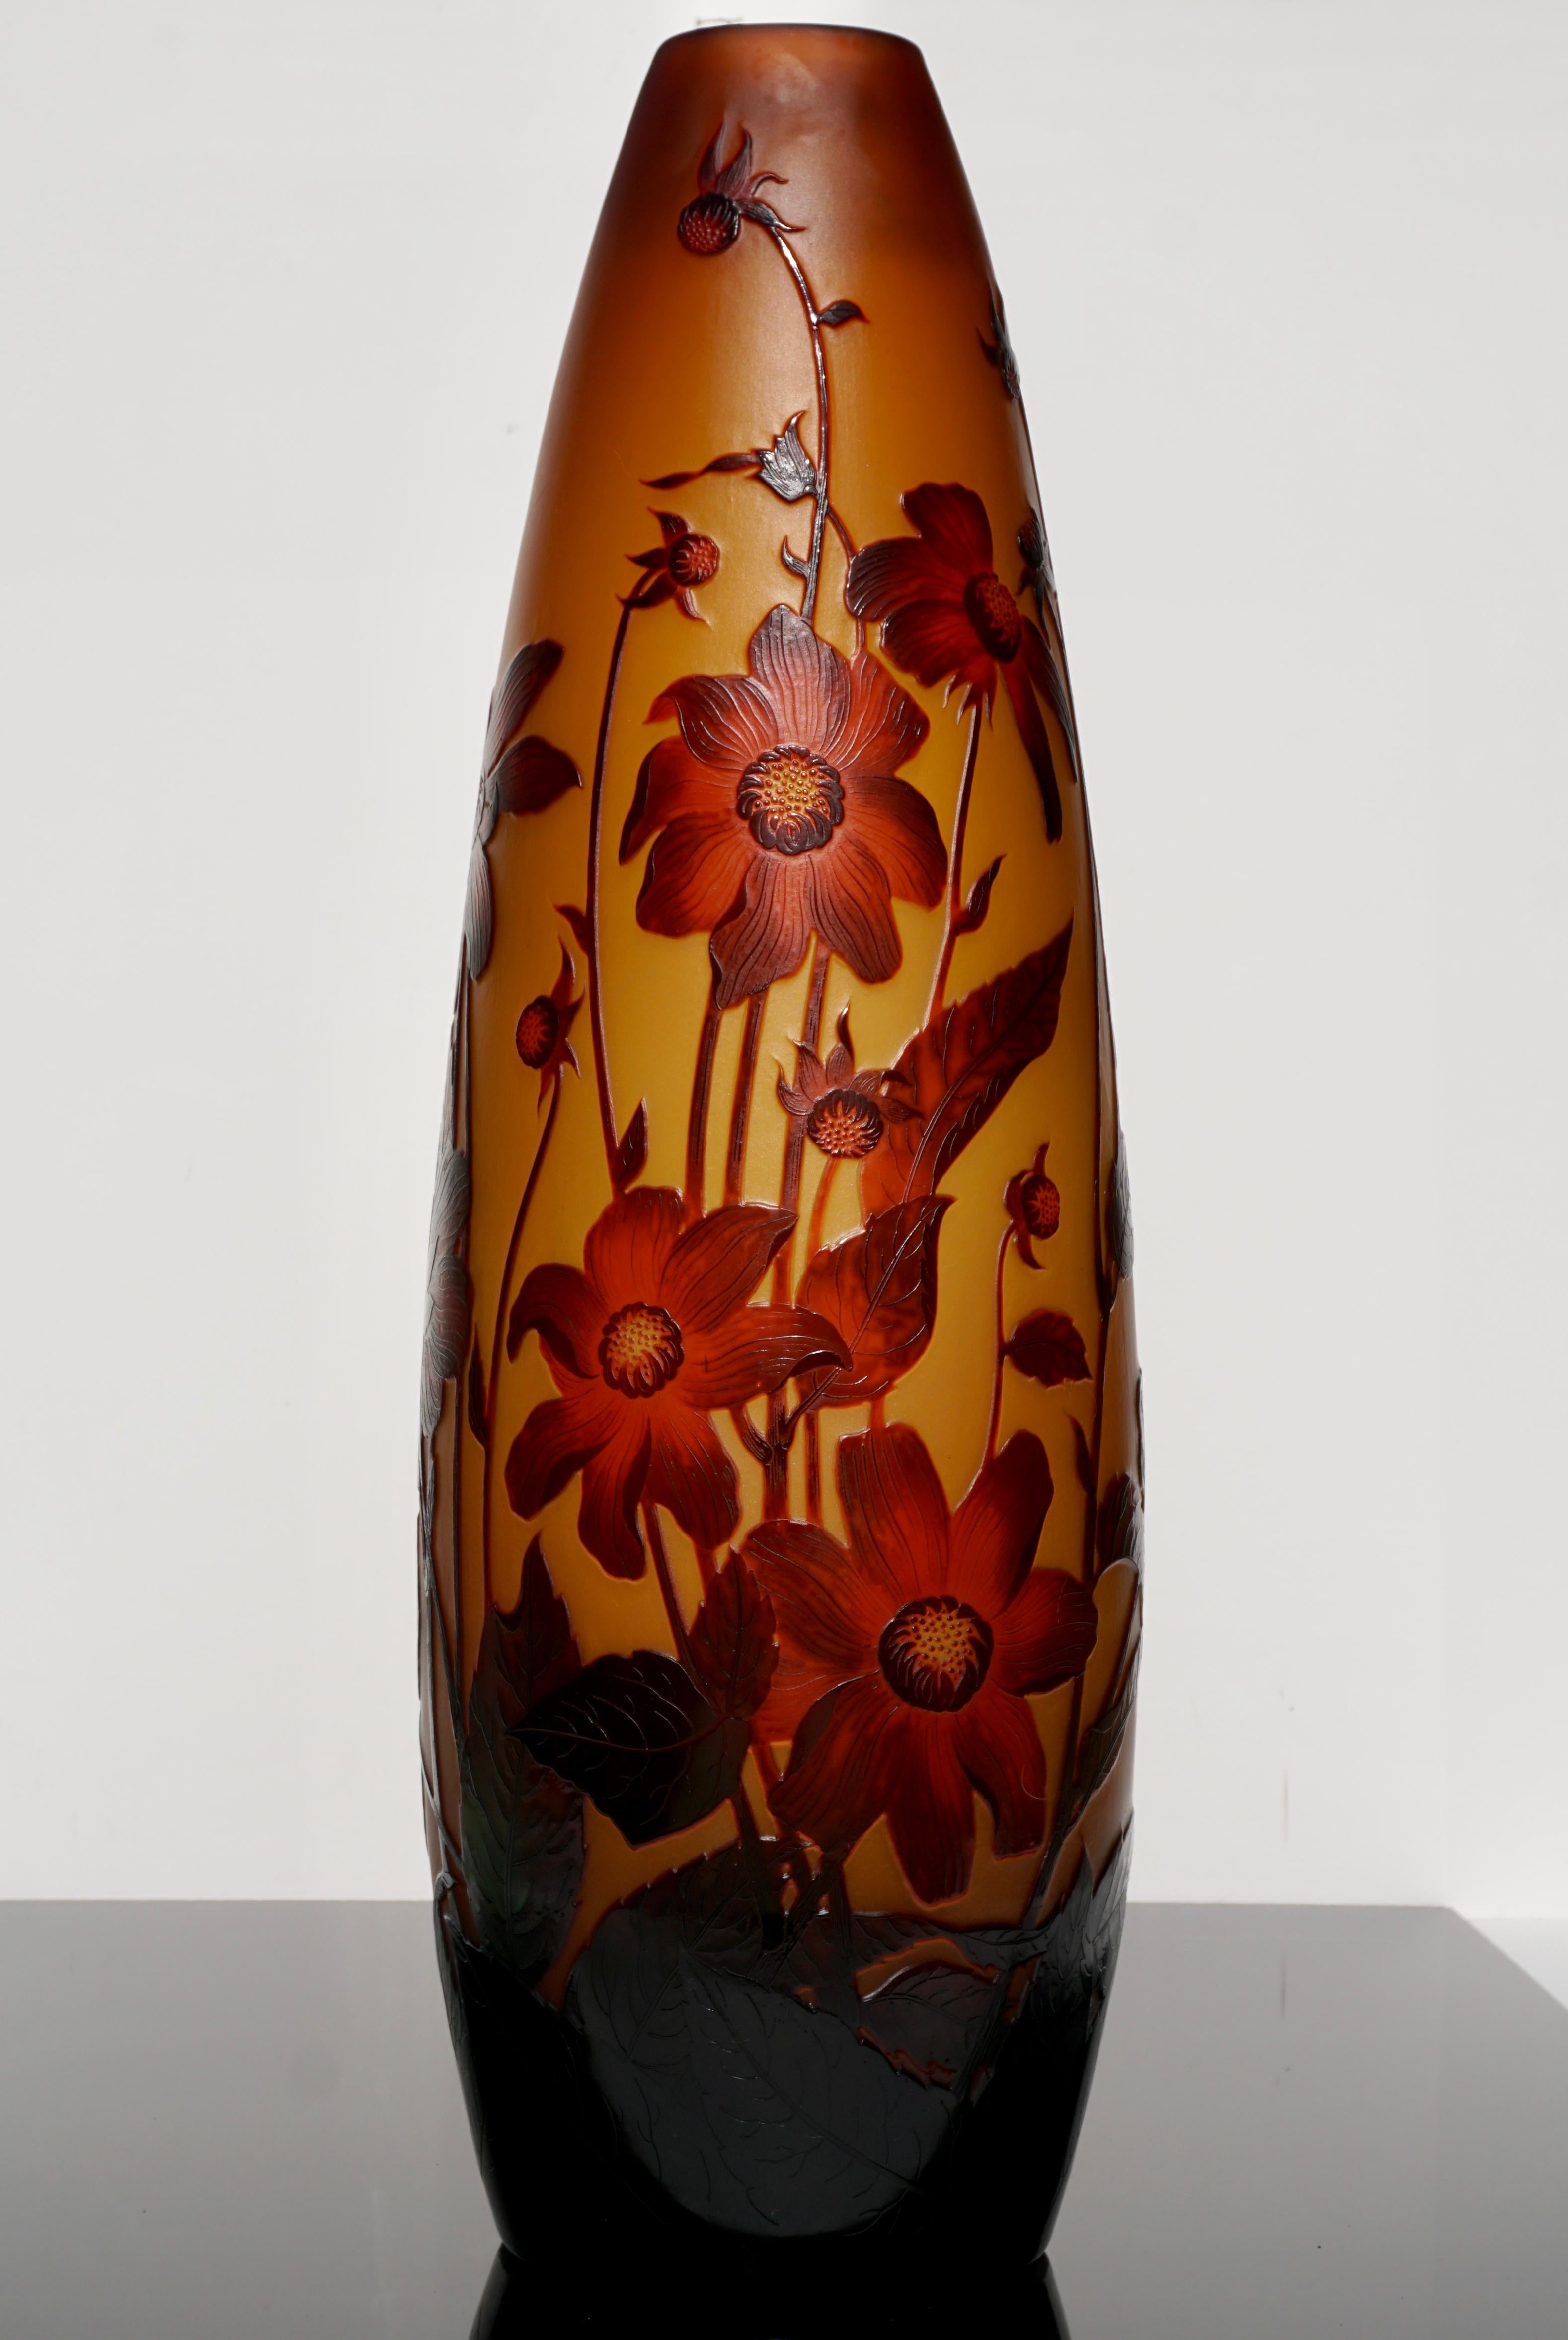 Diese Vase wurde zweifellos von Paul Nicolas wi entworfen und ausgeführt, dem Chefdesigner von Emile Galle und Leiter seines Ateliers in Nancy. Paul Nicolas arbeitete für St. Louis Chrystal, bevor er D'argental gründete, und brachte bessere